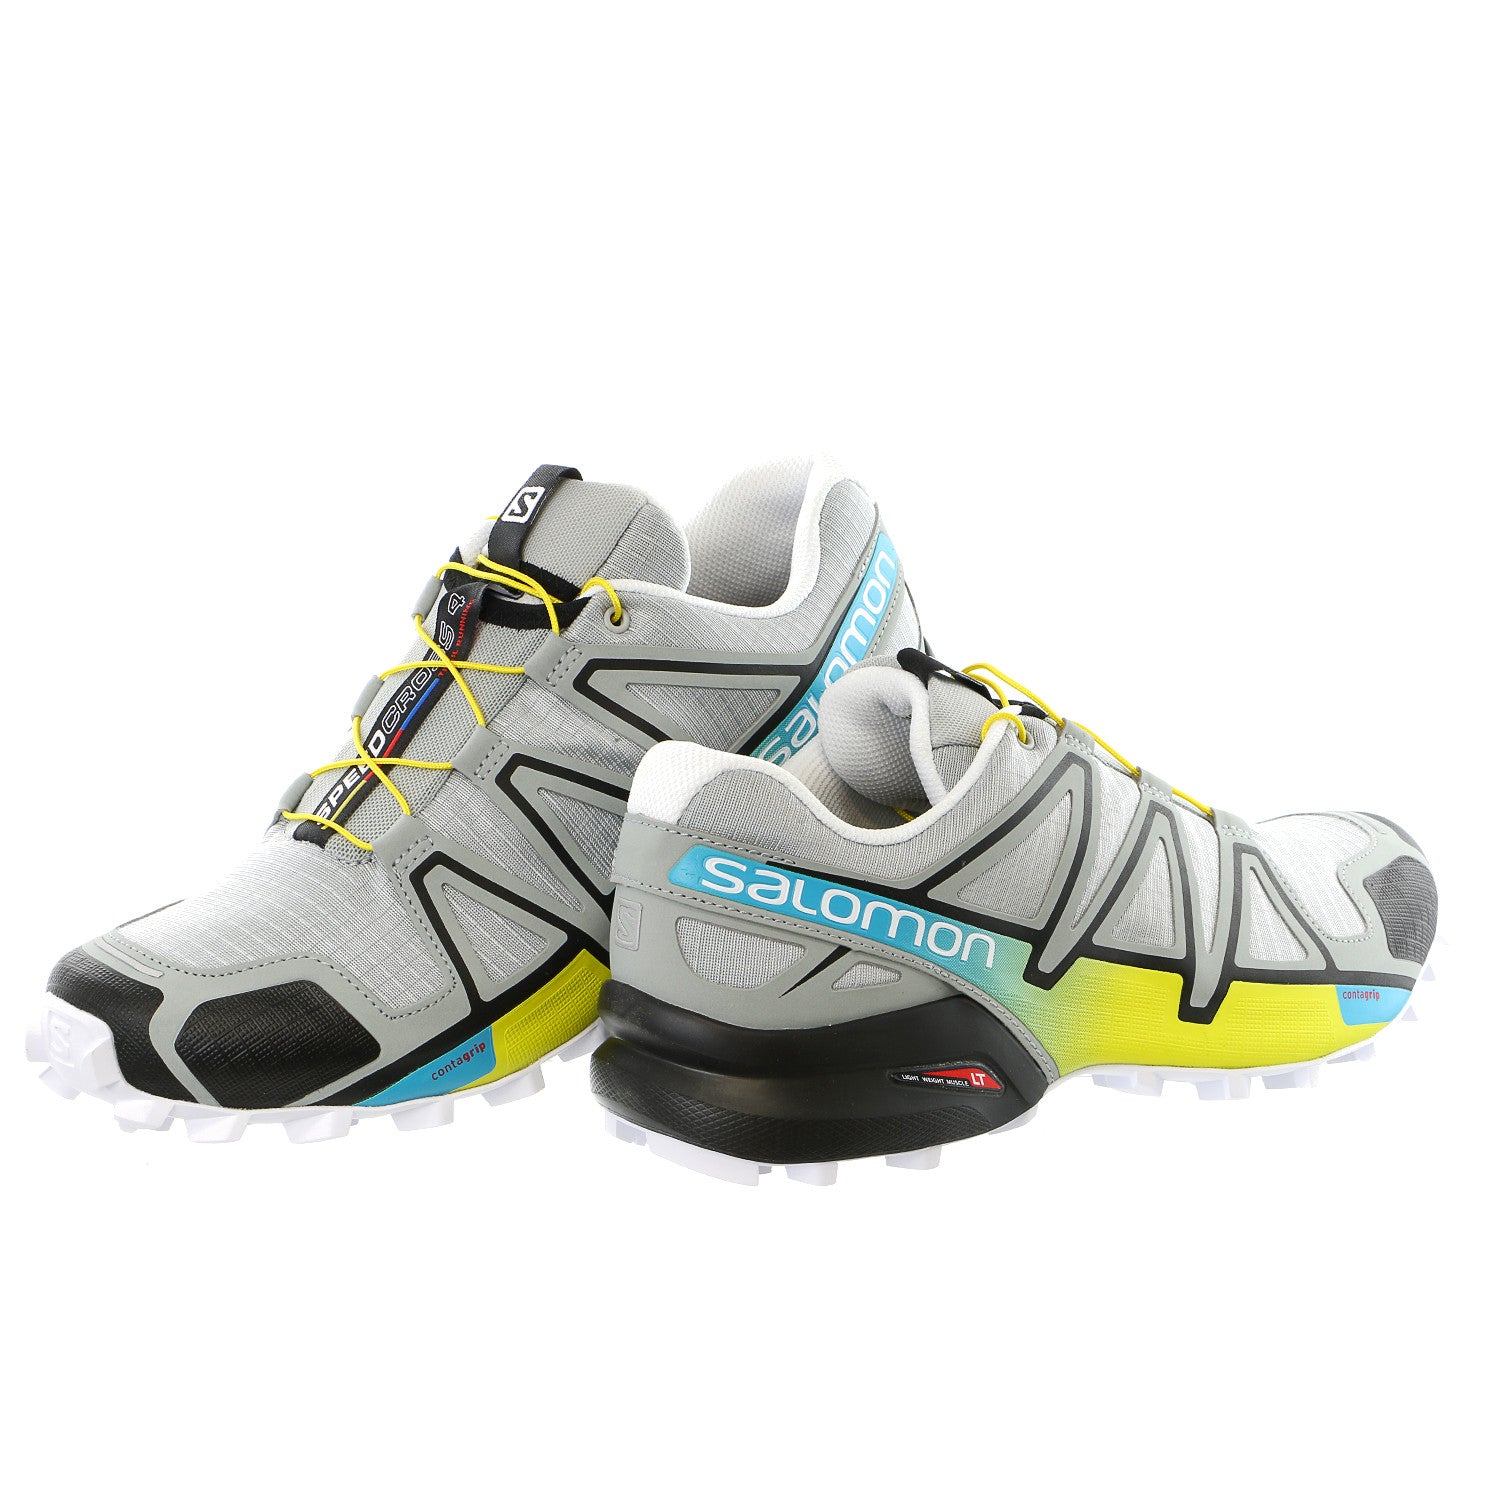 ler Primitiv Sløset Salomon Speedcross 4 Trail Running Shoes - Men's - Shoplifestyle